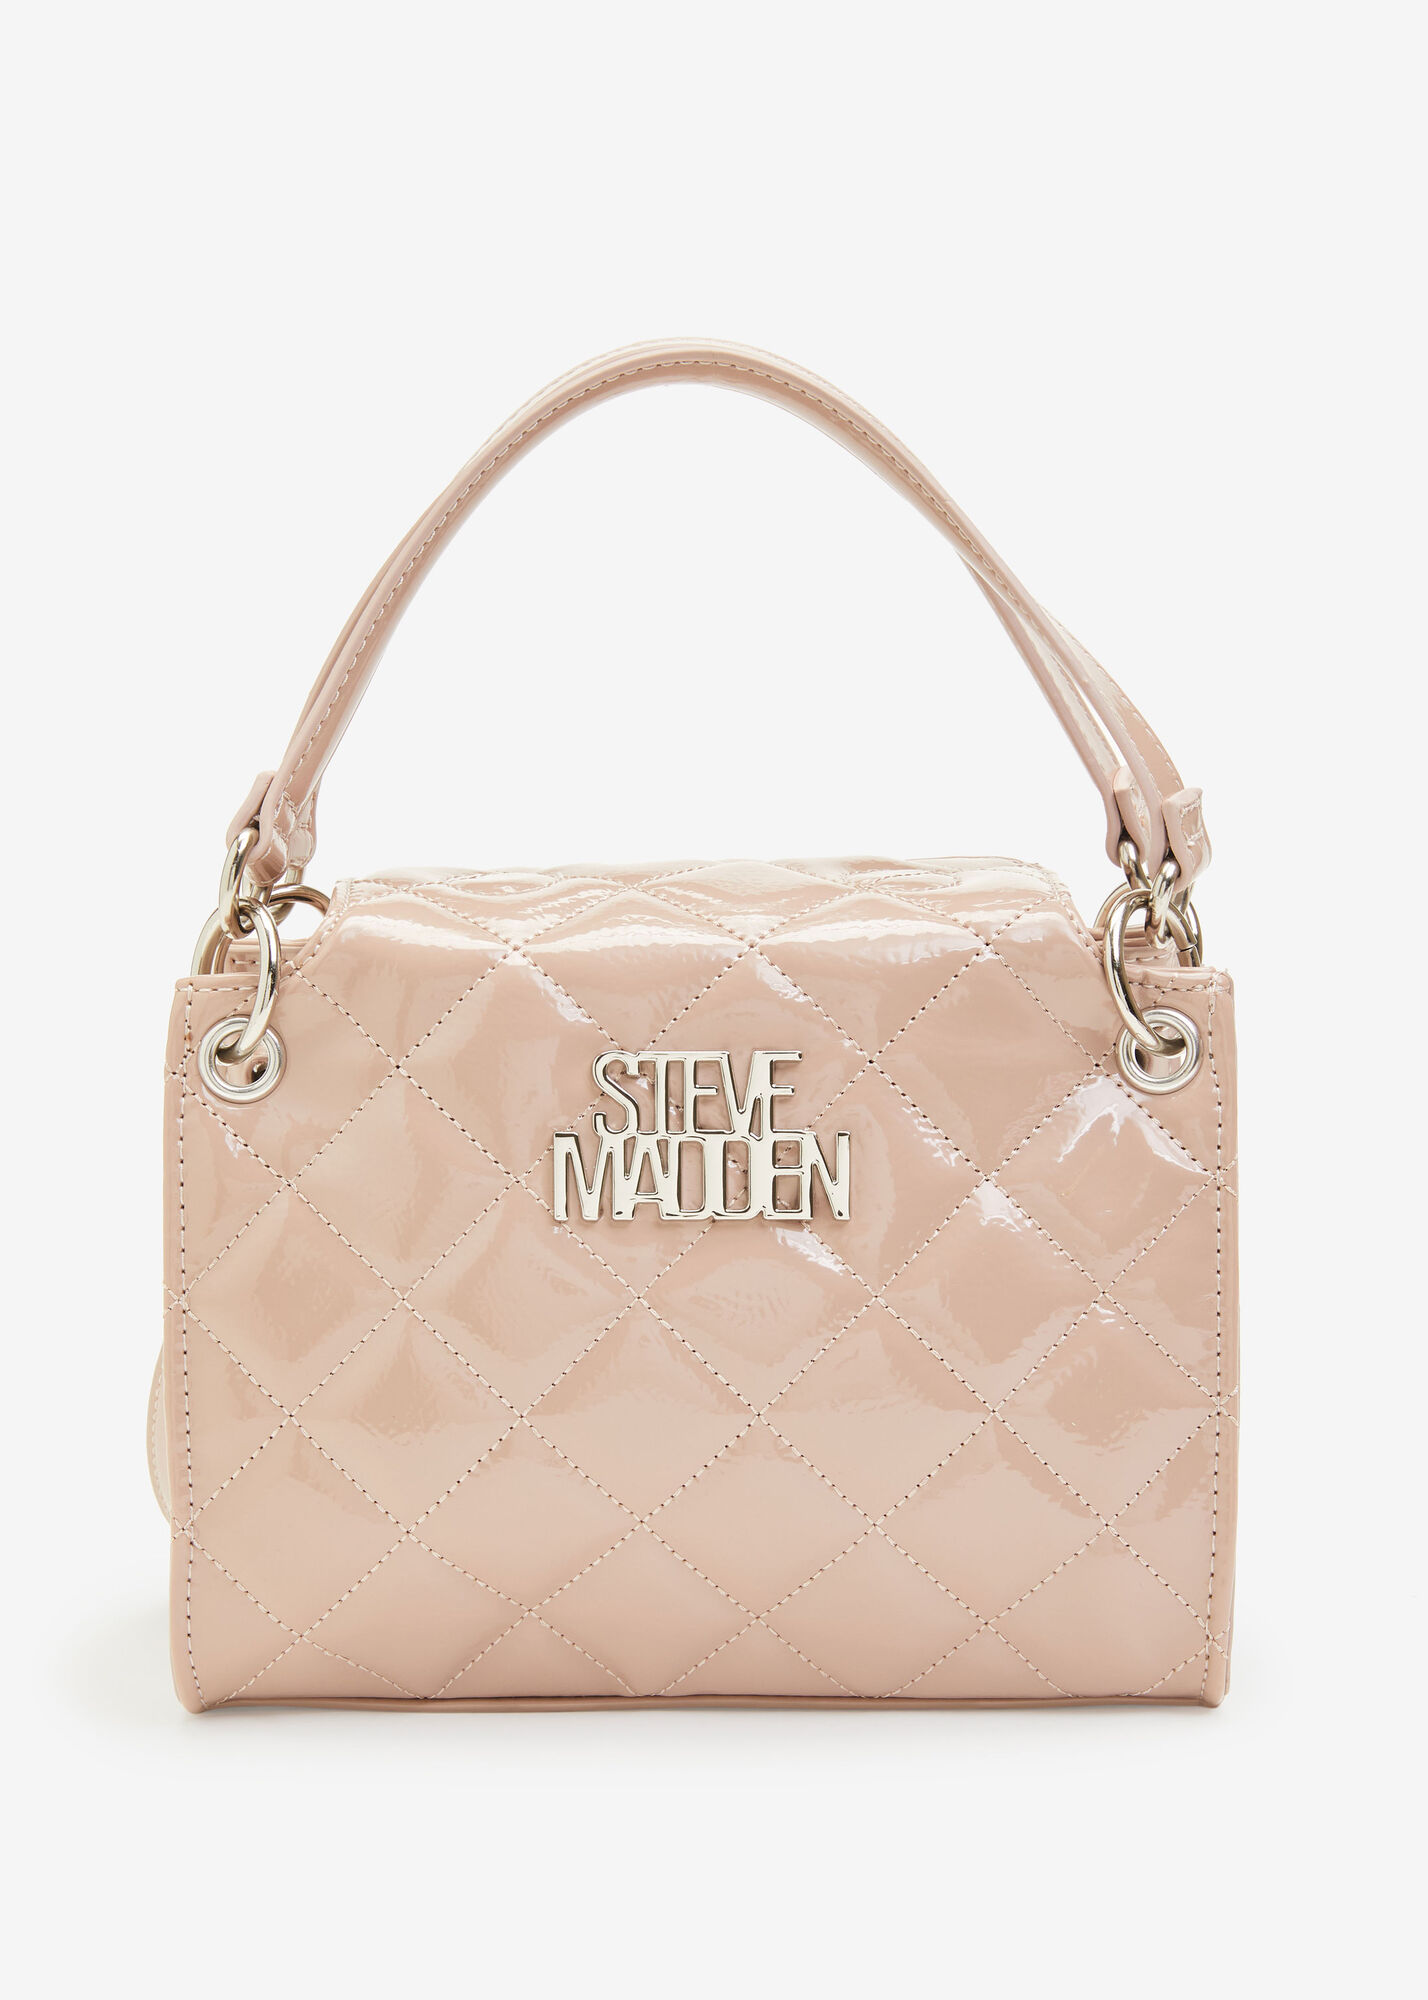 Steve Madden, Bags, Steve Madden Shoulder Bag Hot Pink Faux Leather Chain  Handbag